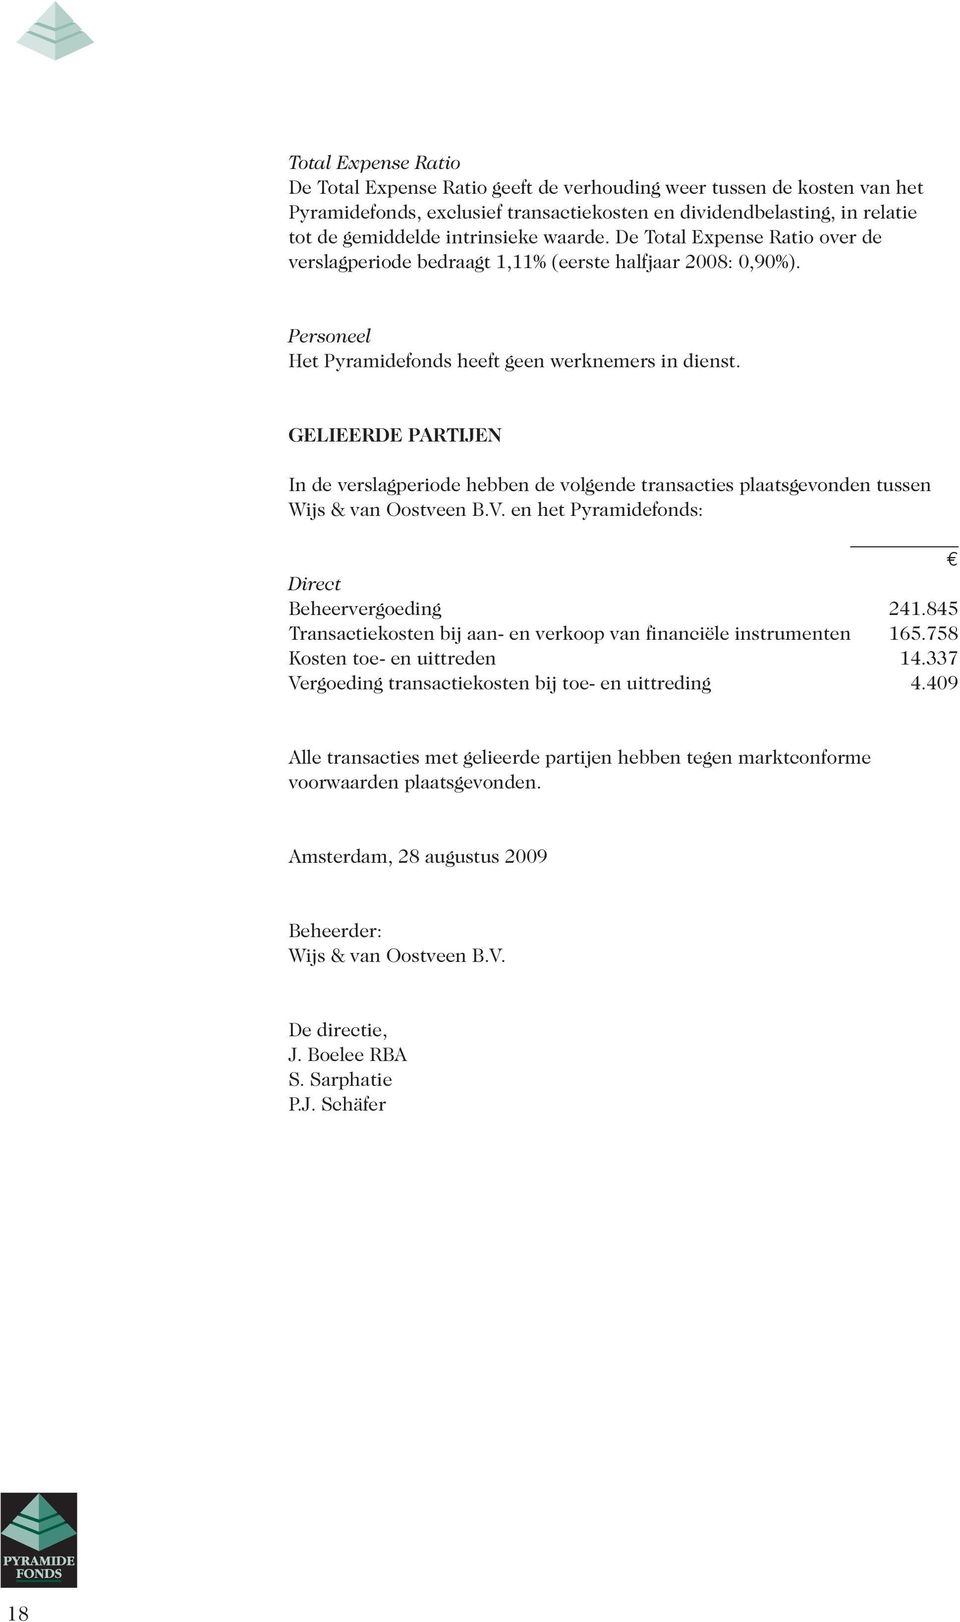 GELIEERDE PARTIJEN In de verslagperiode hebben de volgende transacties plaatsgevonden tussen Wijs & van Oostveen B.V. en het Pyramidefonds: Direct Beheervergoeding 241.